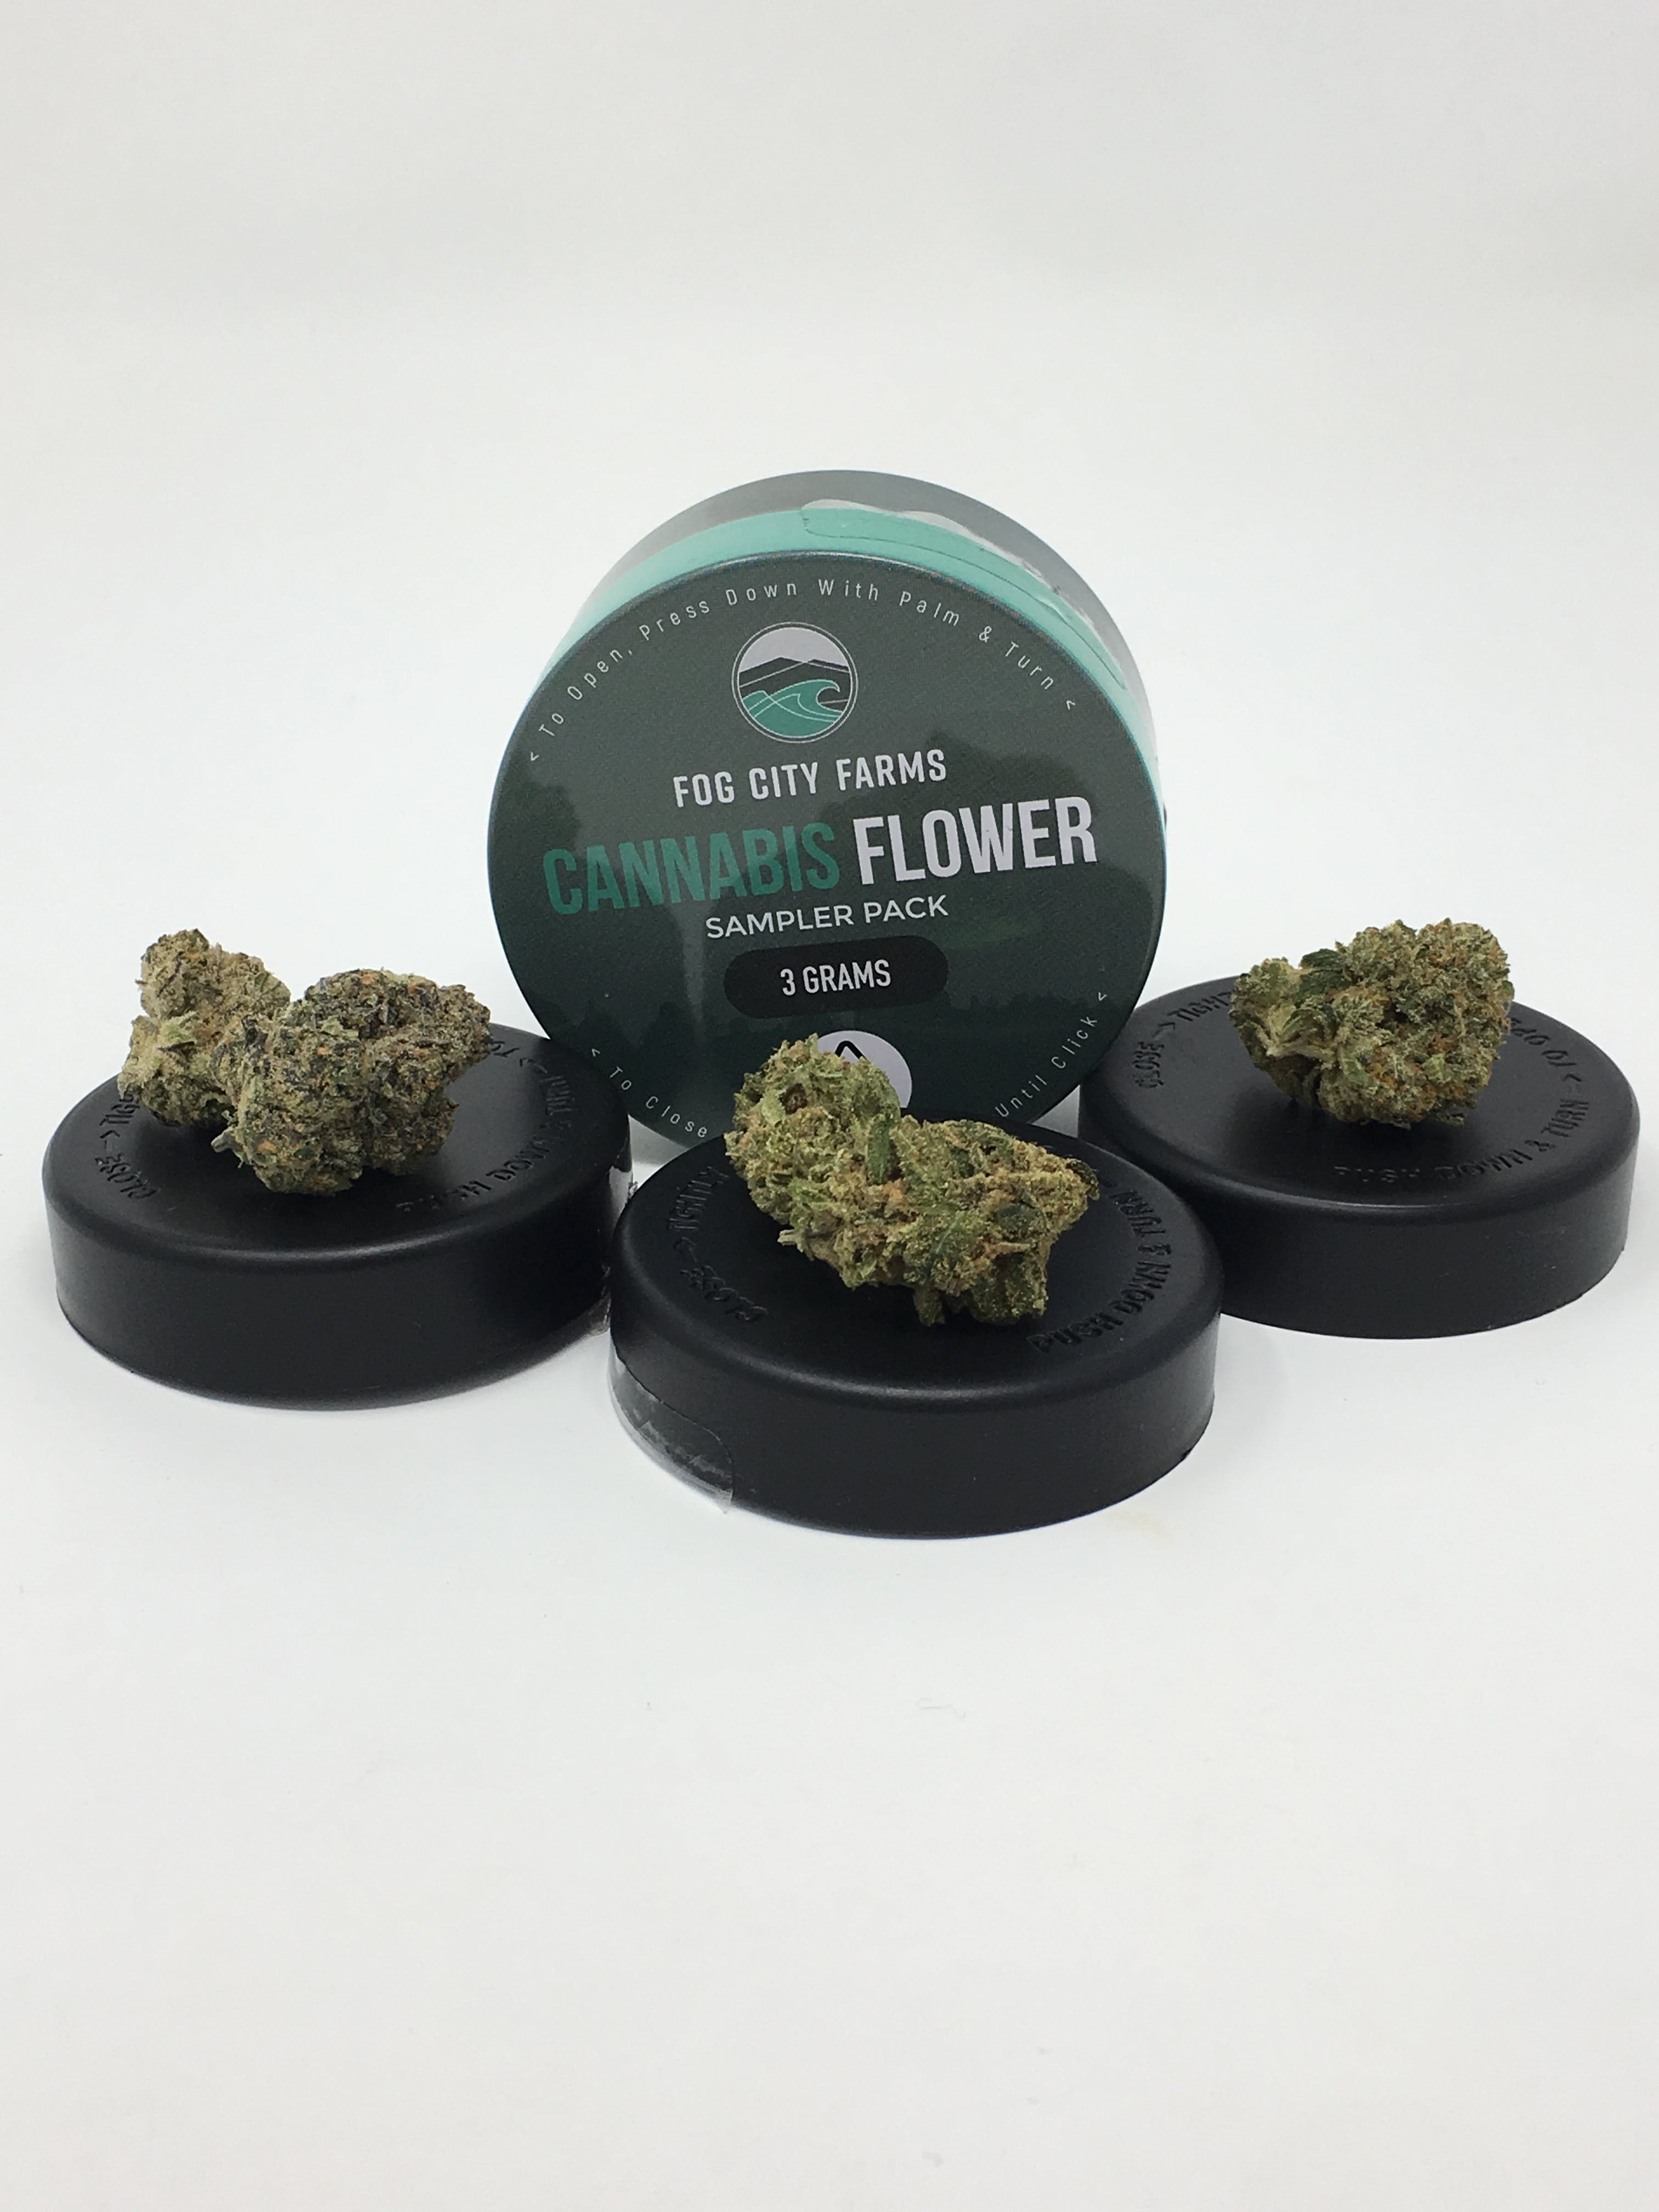 hybrid-cannabis-flower-variety-pack-fog-city-farms